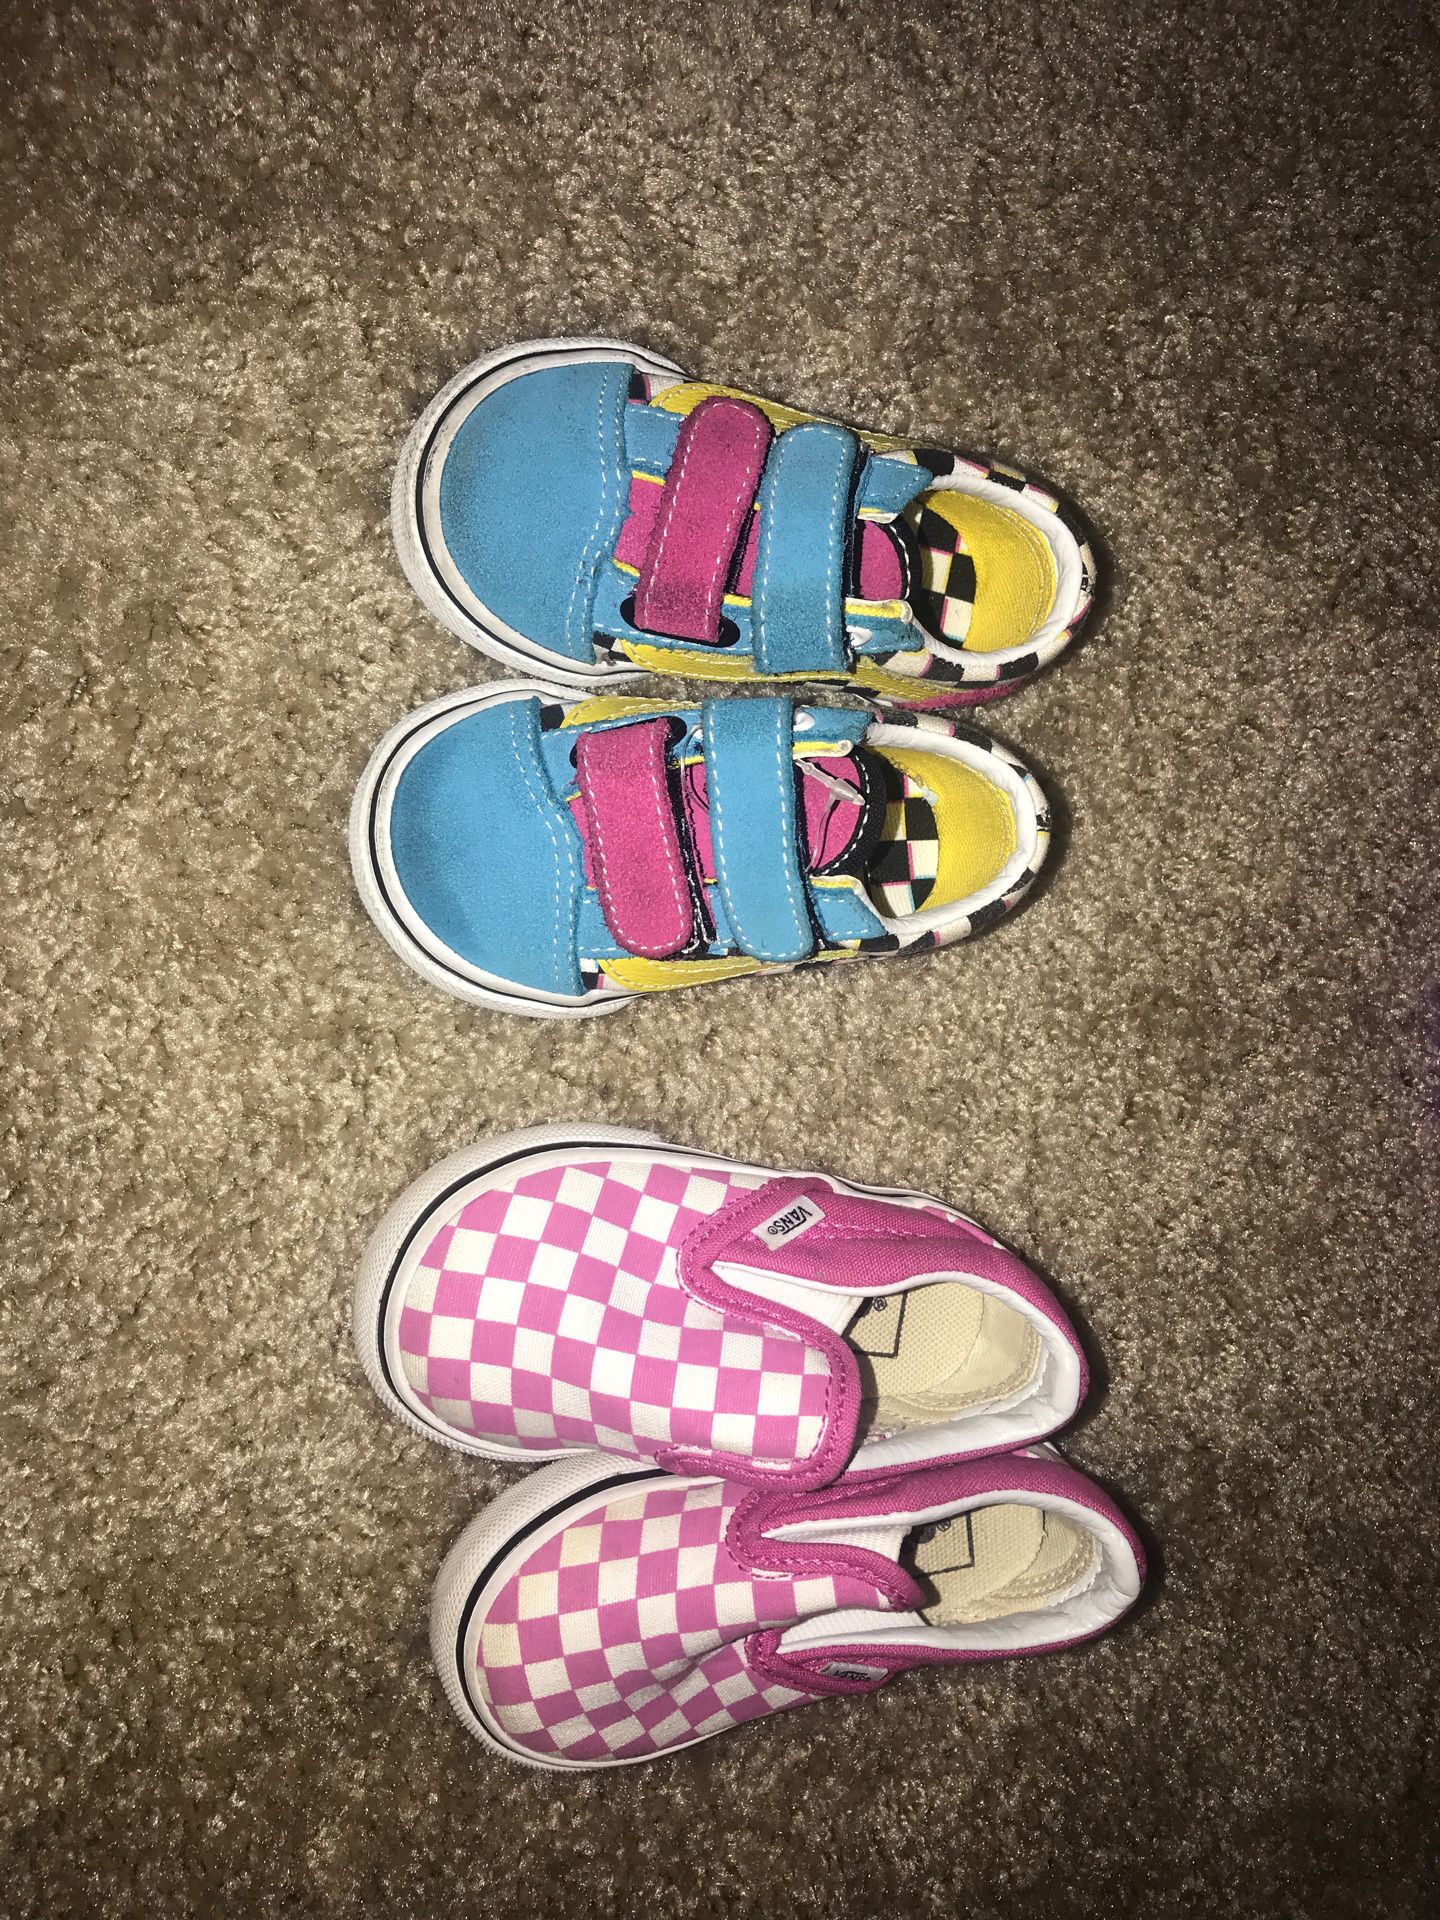 Size 3&4 Vans For Girl